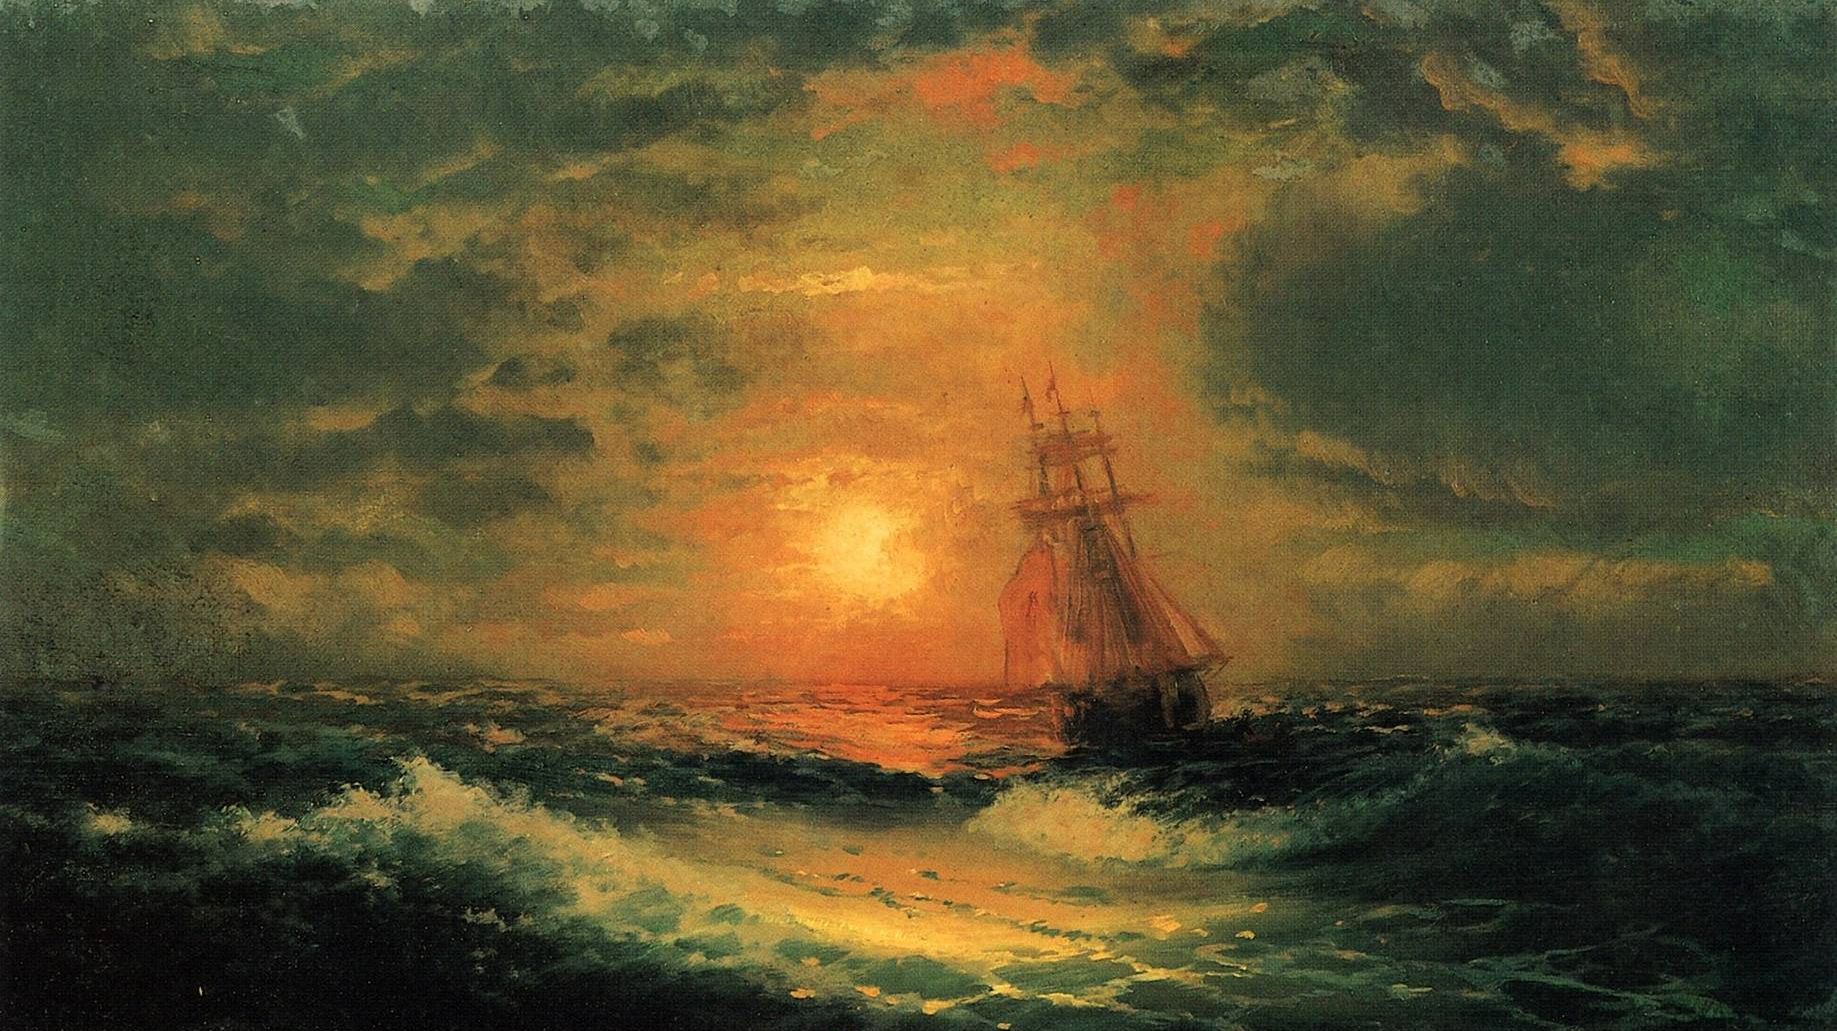 Иван Айвазовский. Закат на море. 1851